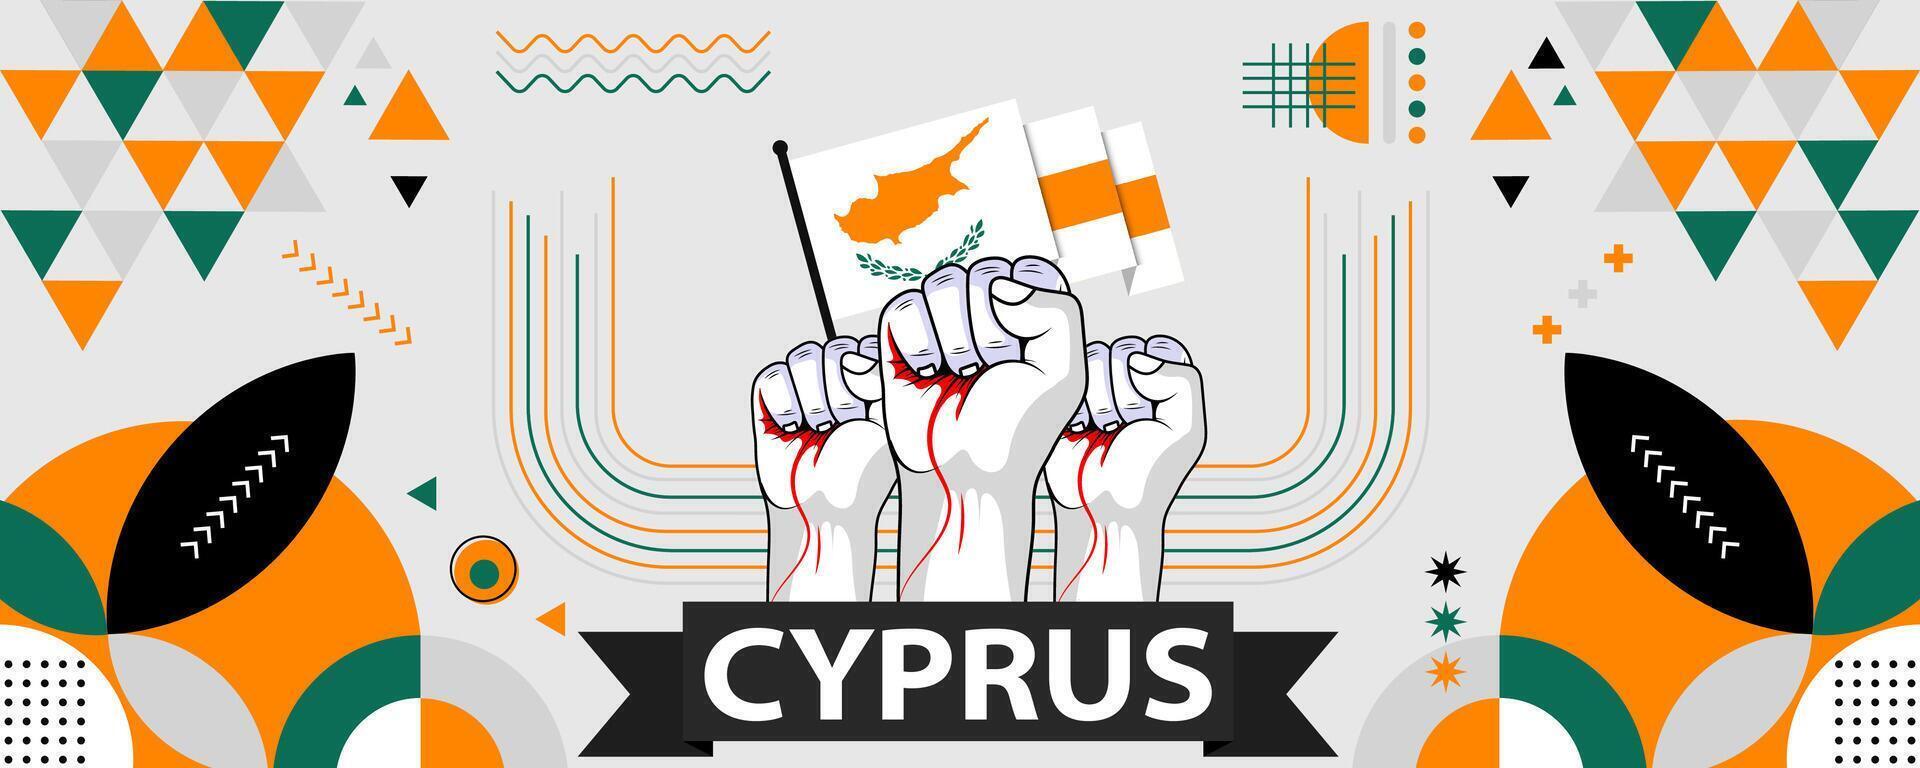 Cyprus nationaal of onafhankelijkheid dag banier voor land viering. Cyprus vlag met verheven vuisten. modern retro ontwerp met typorgaphy abstract meetkundig pictogrammen. vector illustratie.